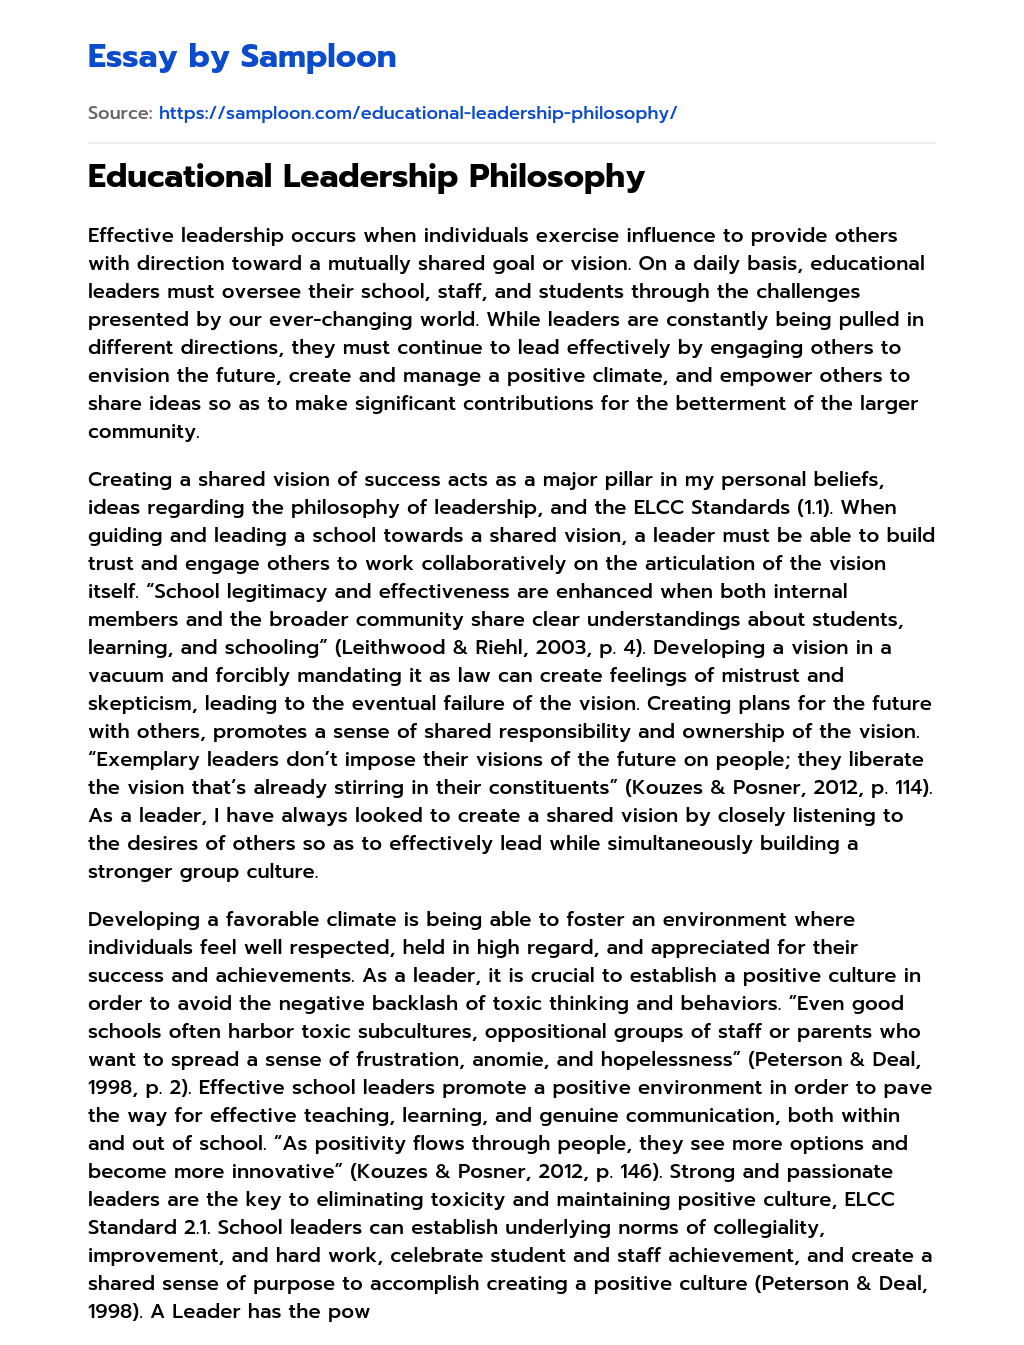 dissertation topics on educational leadership